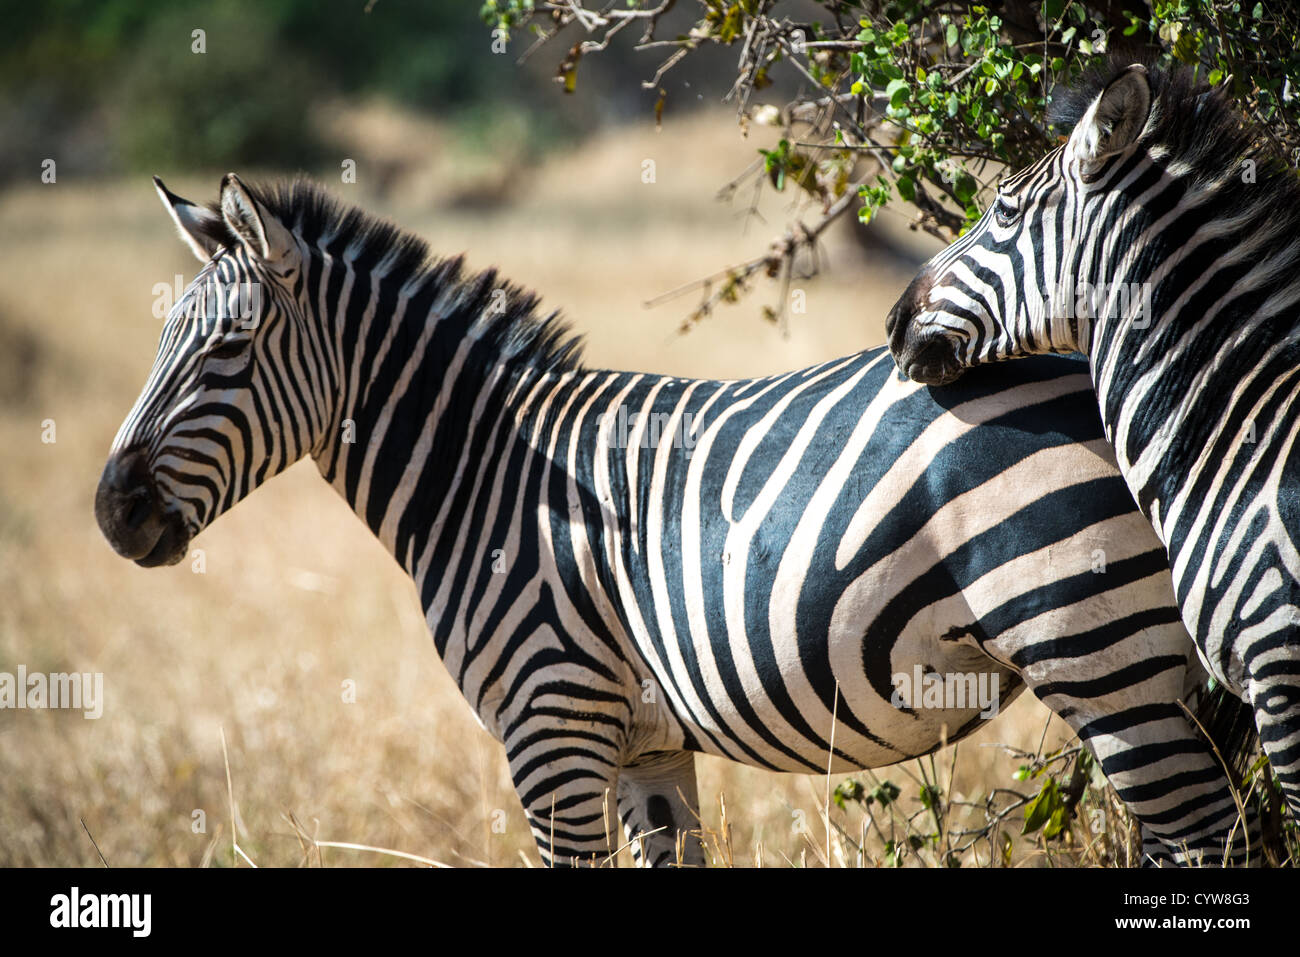 TARANGIRE-NATIONALPARK, Tansania - zwei Zebras im Tarangire-Nationalpark im Norden Tansanias, nicht weit vom Ngorongoro-Krater und dem Serengeti. Der Ngorongoro-Krater, der zum UNESCO-Weltkulturerbe gehört, ist ein riesiger vulkanischer Krater im Norden Tansanias. Sie wurde vor 2-3 Millionen Jahren gegründet, hat einen Durchmesser von etwa 20 Kilometern und ist die Heimat vielfältiger Tiere, einschließlich der „Big Five“-Wildtiere. Das Ngorongoro Conservation Area, bewohnt von den Maasai, enthält auch bedeutende archäologische Stätten wie die Olduvai-Schlucht und Laetoli, die Einblicke in die frühe menschliche Evolution bieten. Stockfoto